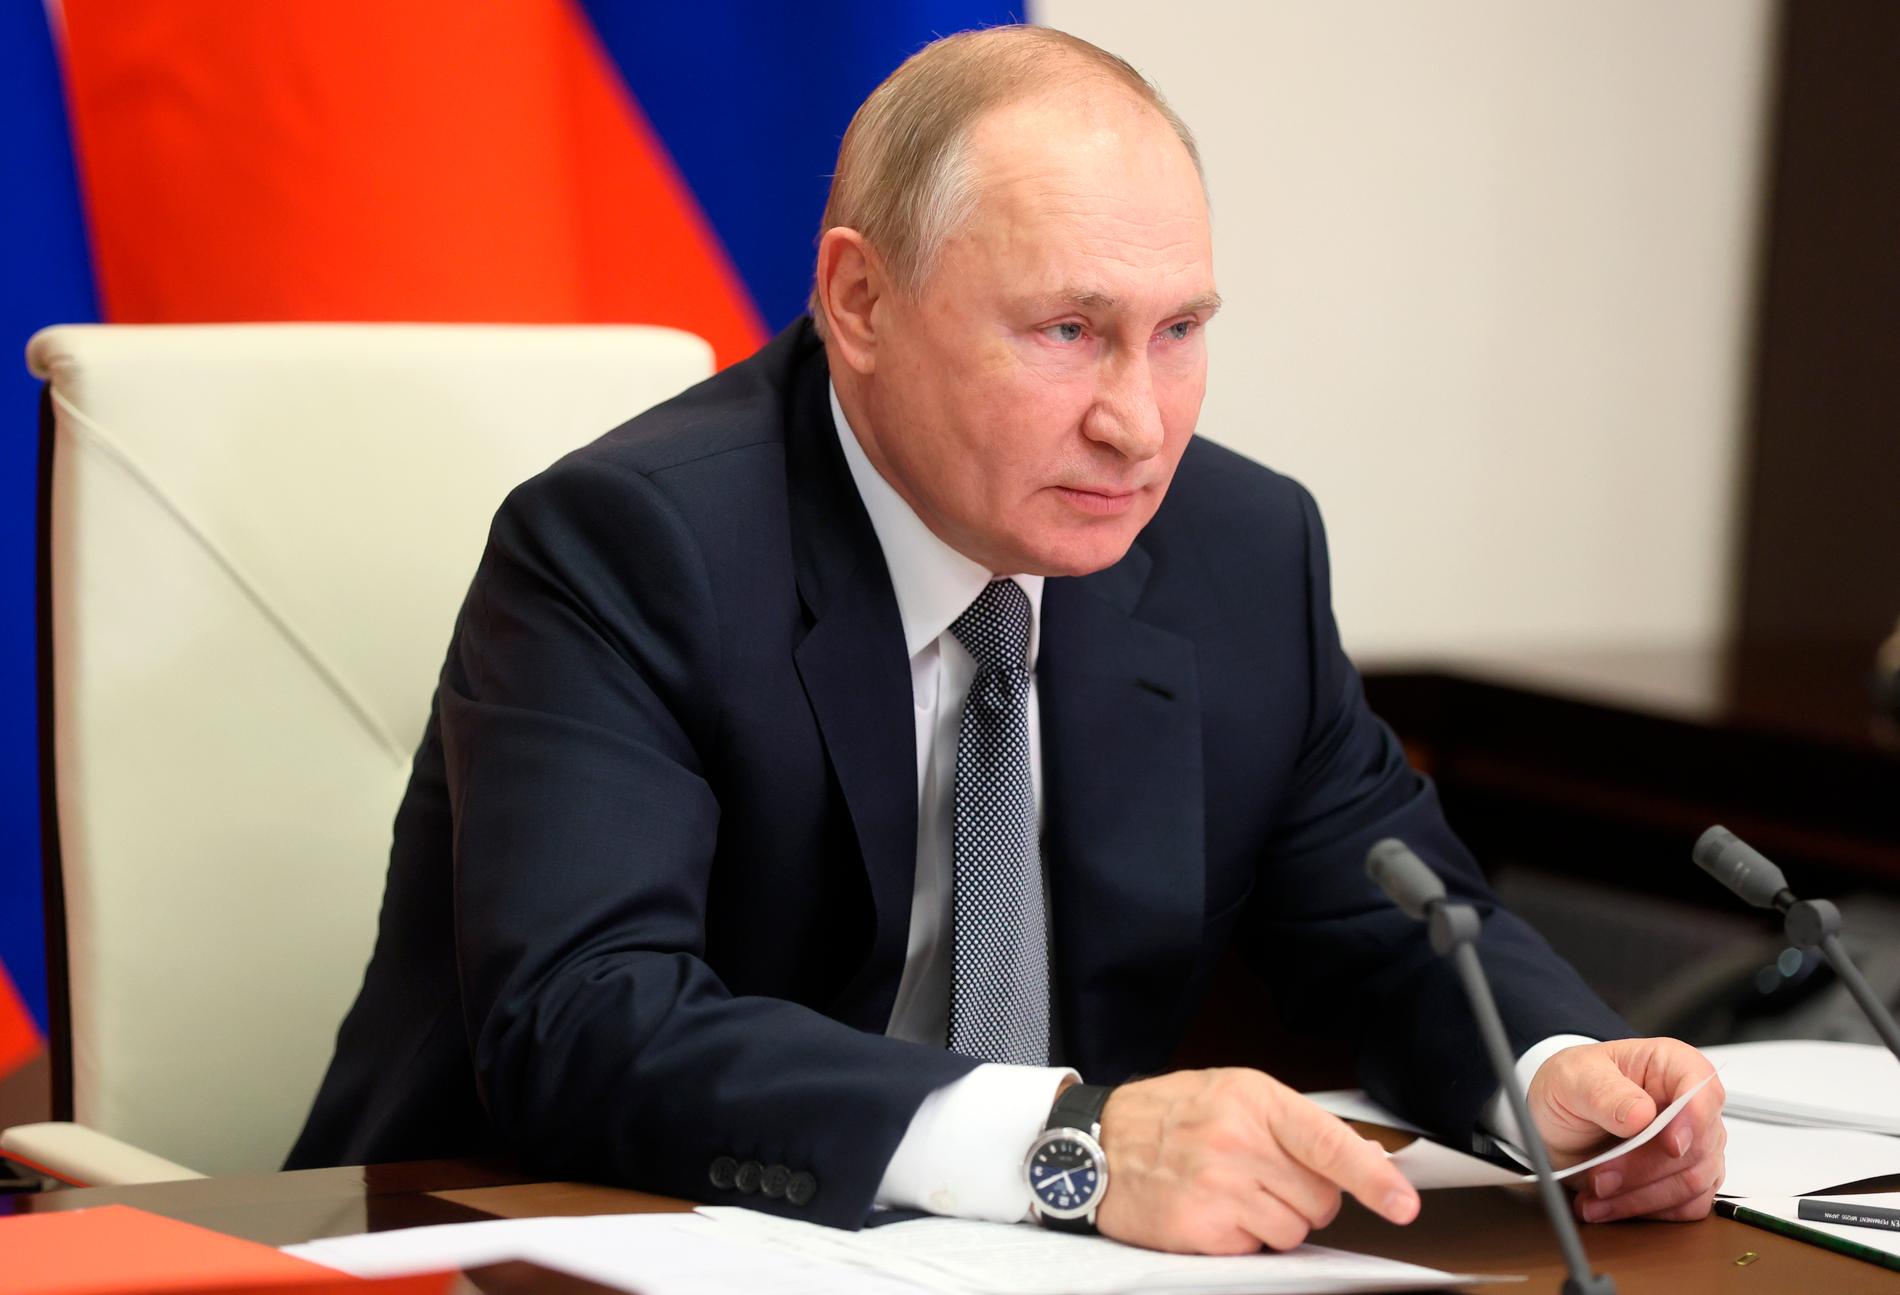 ”När Ryssland annekterade Krim 2014 utmanade man den rådande världsordningen. Putin gör det nu igen genom sitt invasionshot mot Ukraina”, skriver Wolfgang Hansson.